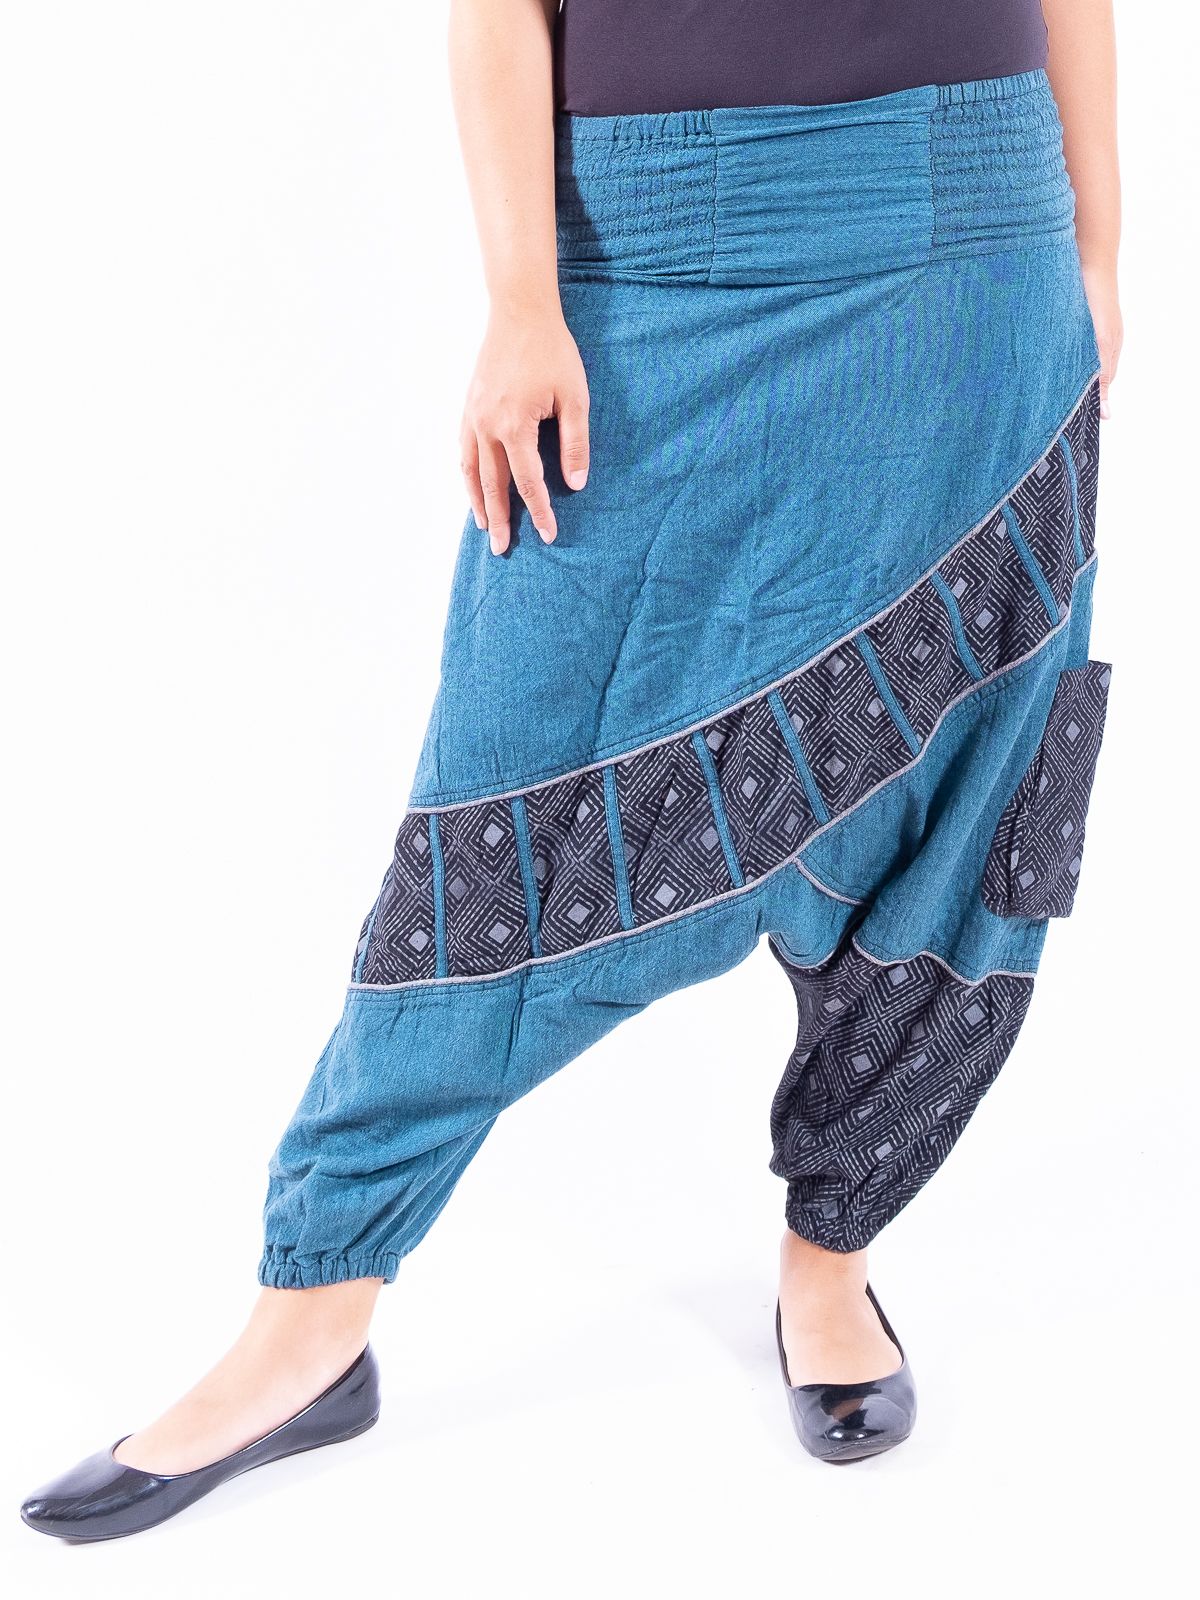 Kalhoty KABUL, ruční práce Nepál NT0096-04-004 KENAVI